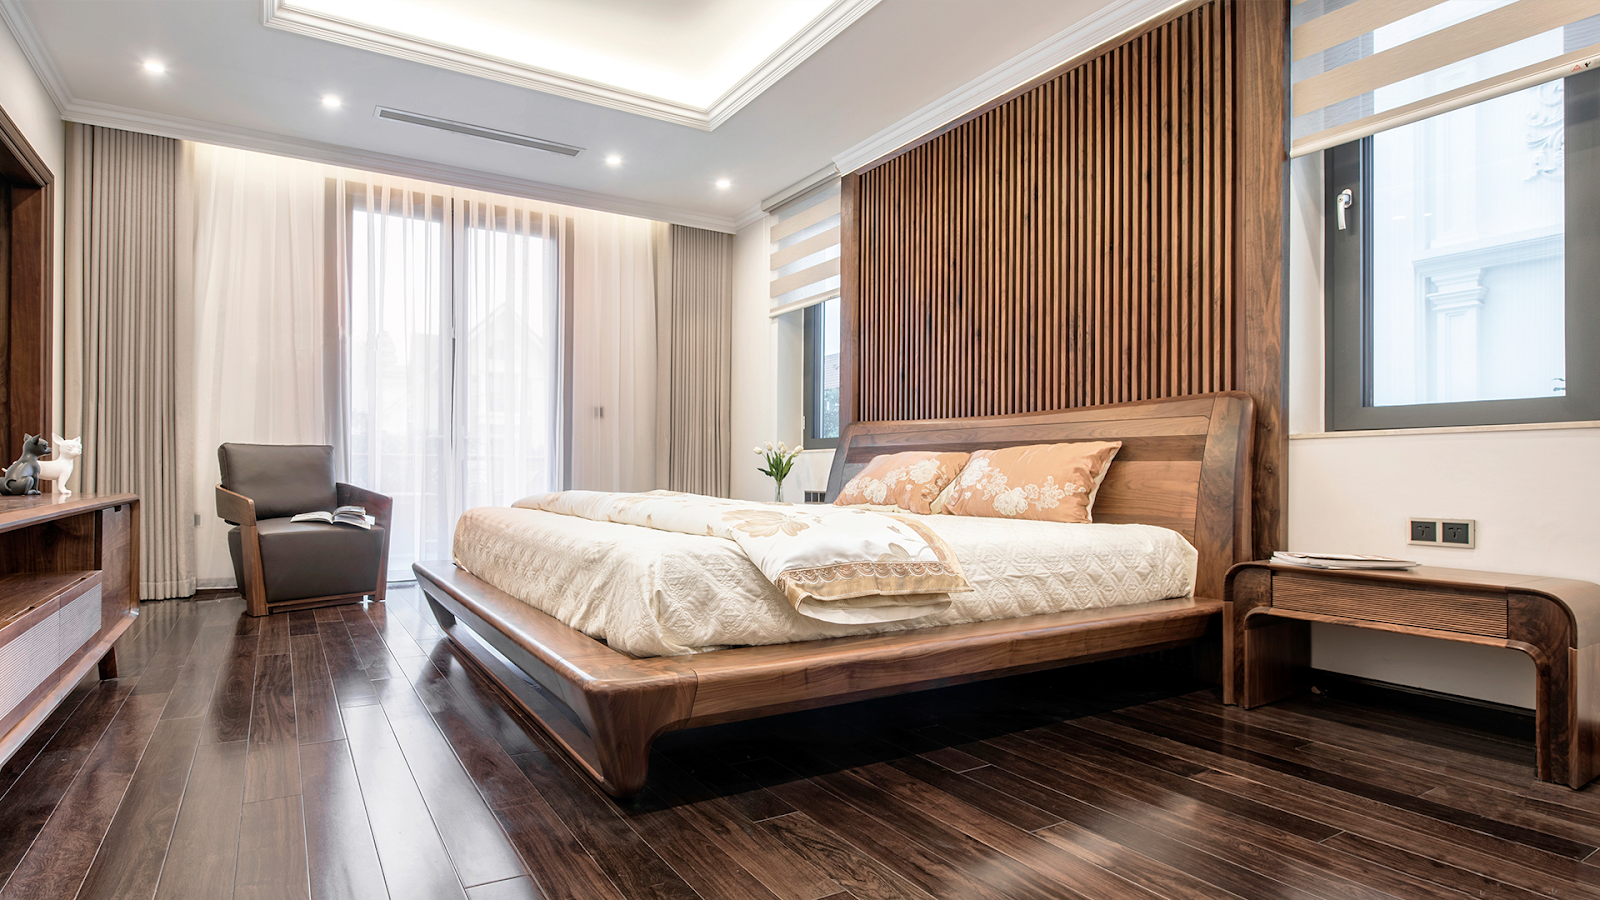 Đừng lo lắng nếu bạn không biết thiết kế nội thất phòng ngủ rộng 40m2 như thế nào cho sang trọng và đẳng cấp. Chúng tôi sẽ giúp bạn với một số mẫu phòng ngủ sang trọng tổng hợp được cập nhật thường xuyên.